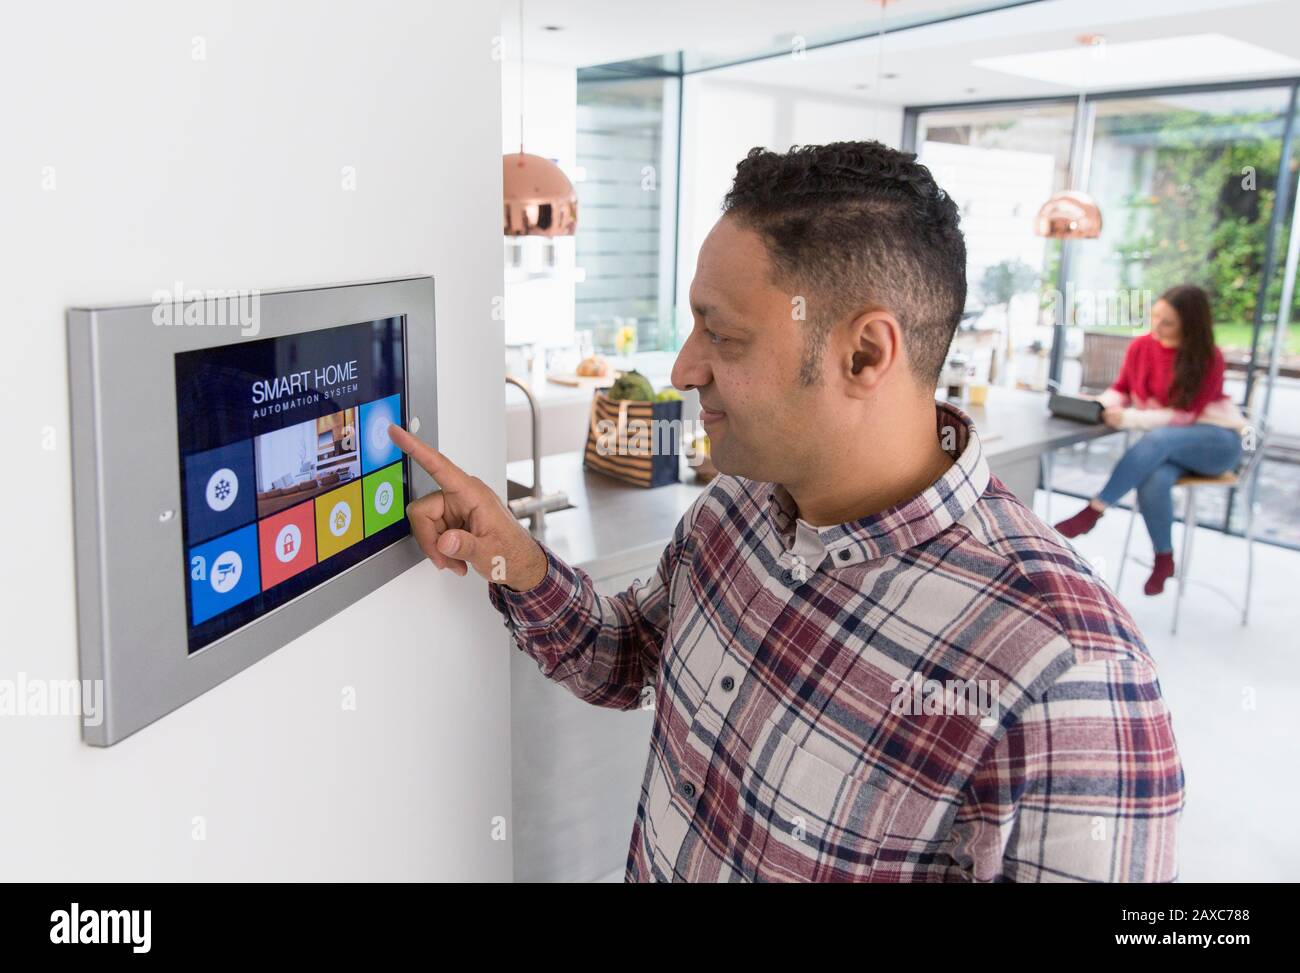 Allarme smart home con touch screen impostato dall'uomo Foto Stock